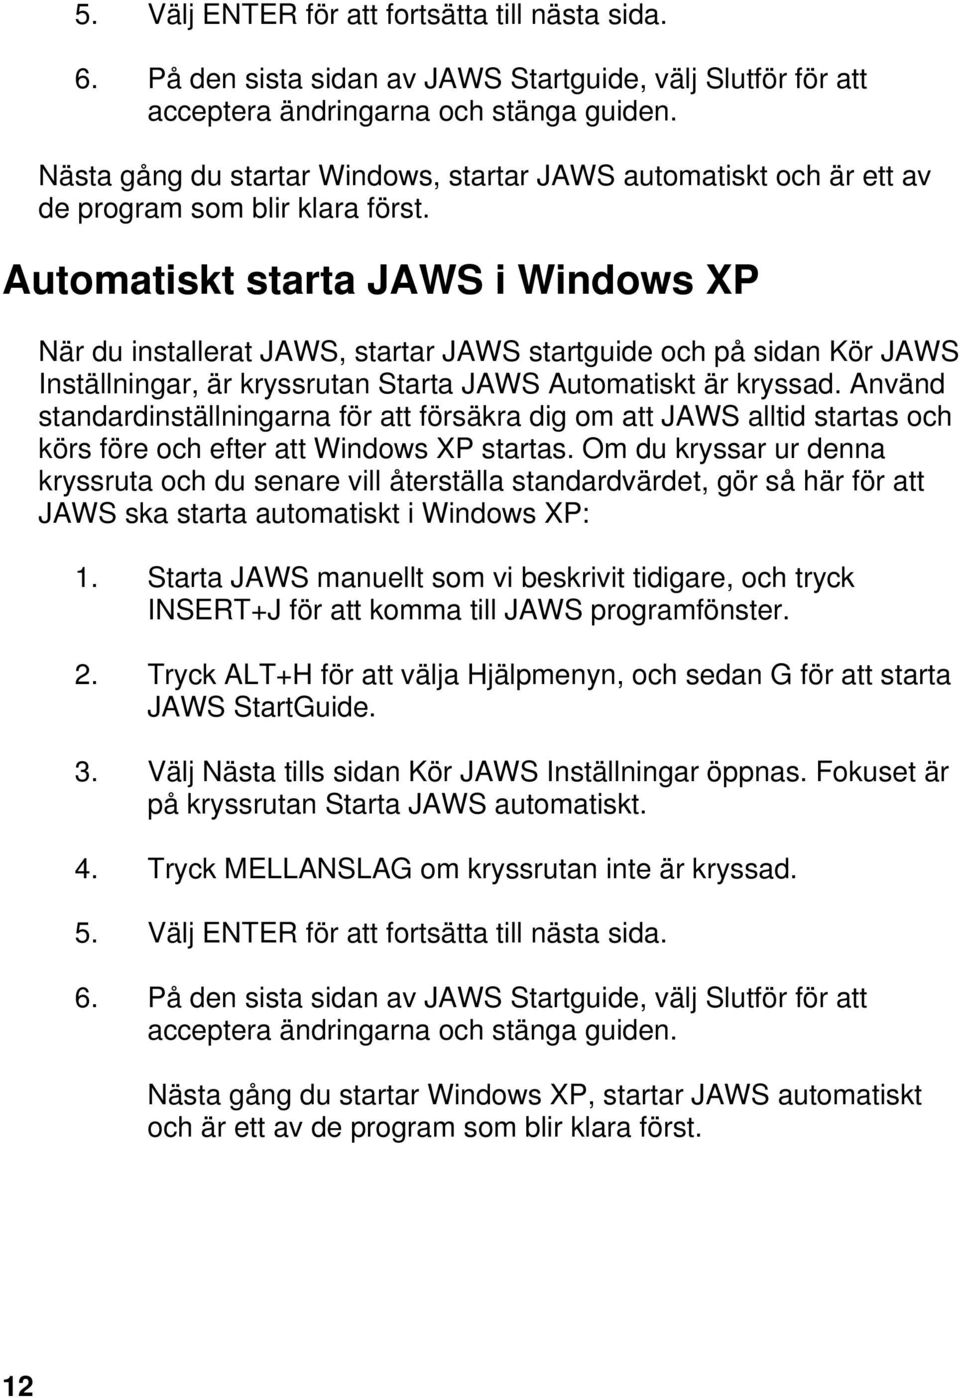 Automatiskt starta JAWS i Windows XP När du installerat JAWS, startar JAWS startguide och på sidan Kör JAWS Inställningar, är kryssrutan Starta JAWS Automatiskt är kryssad.